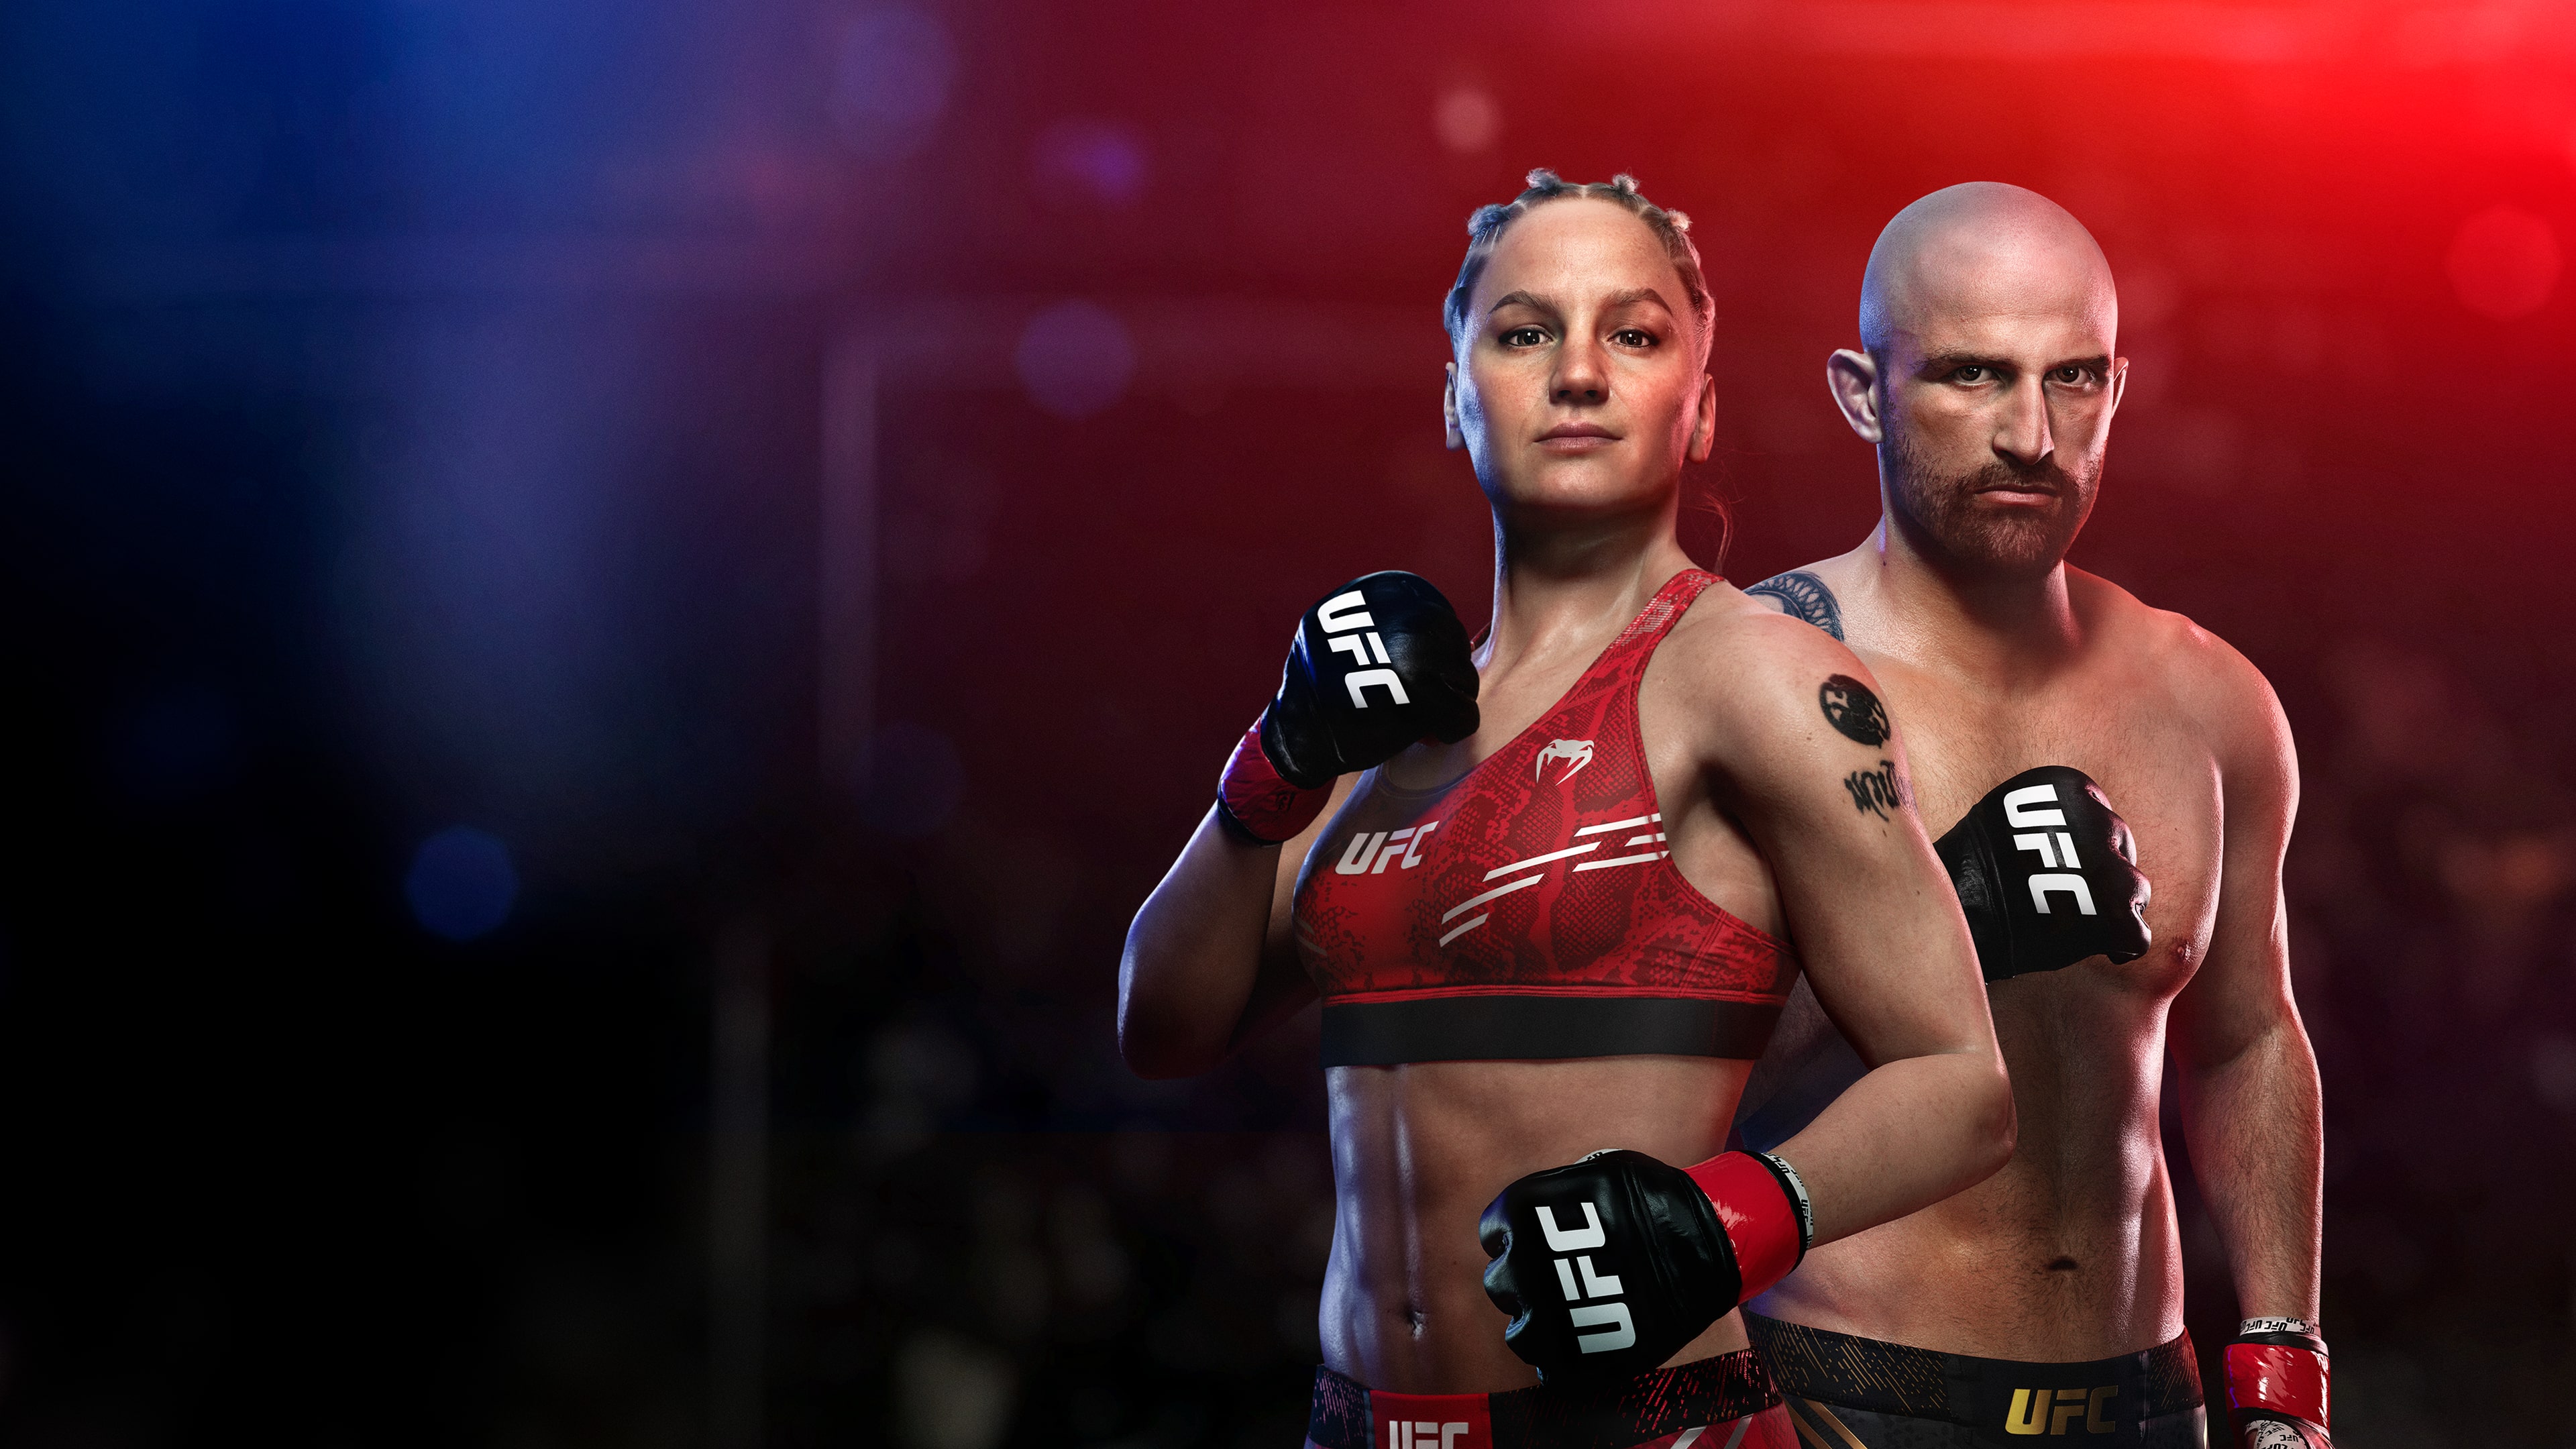 UFC 5 PS5 - Digital World PSN